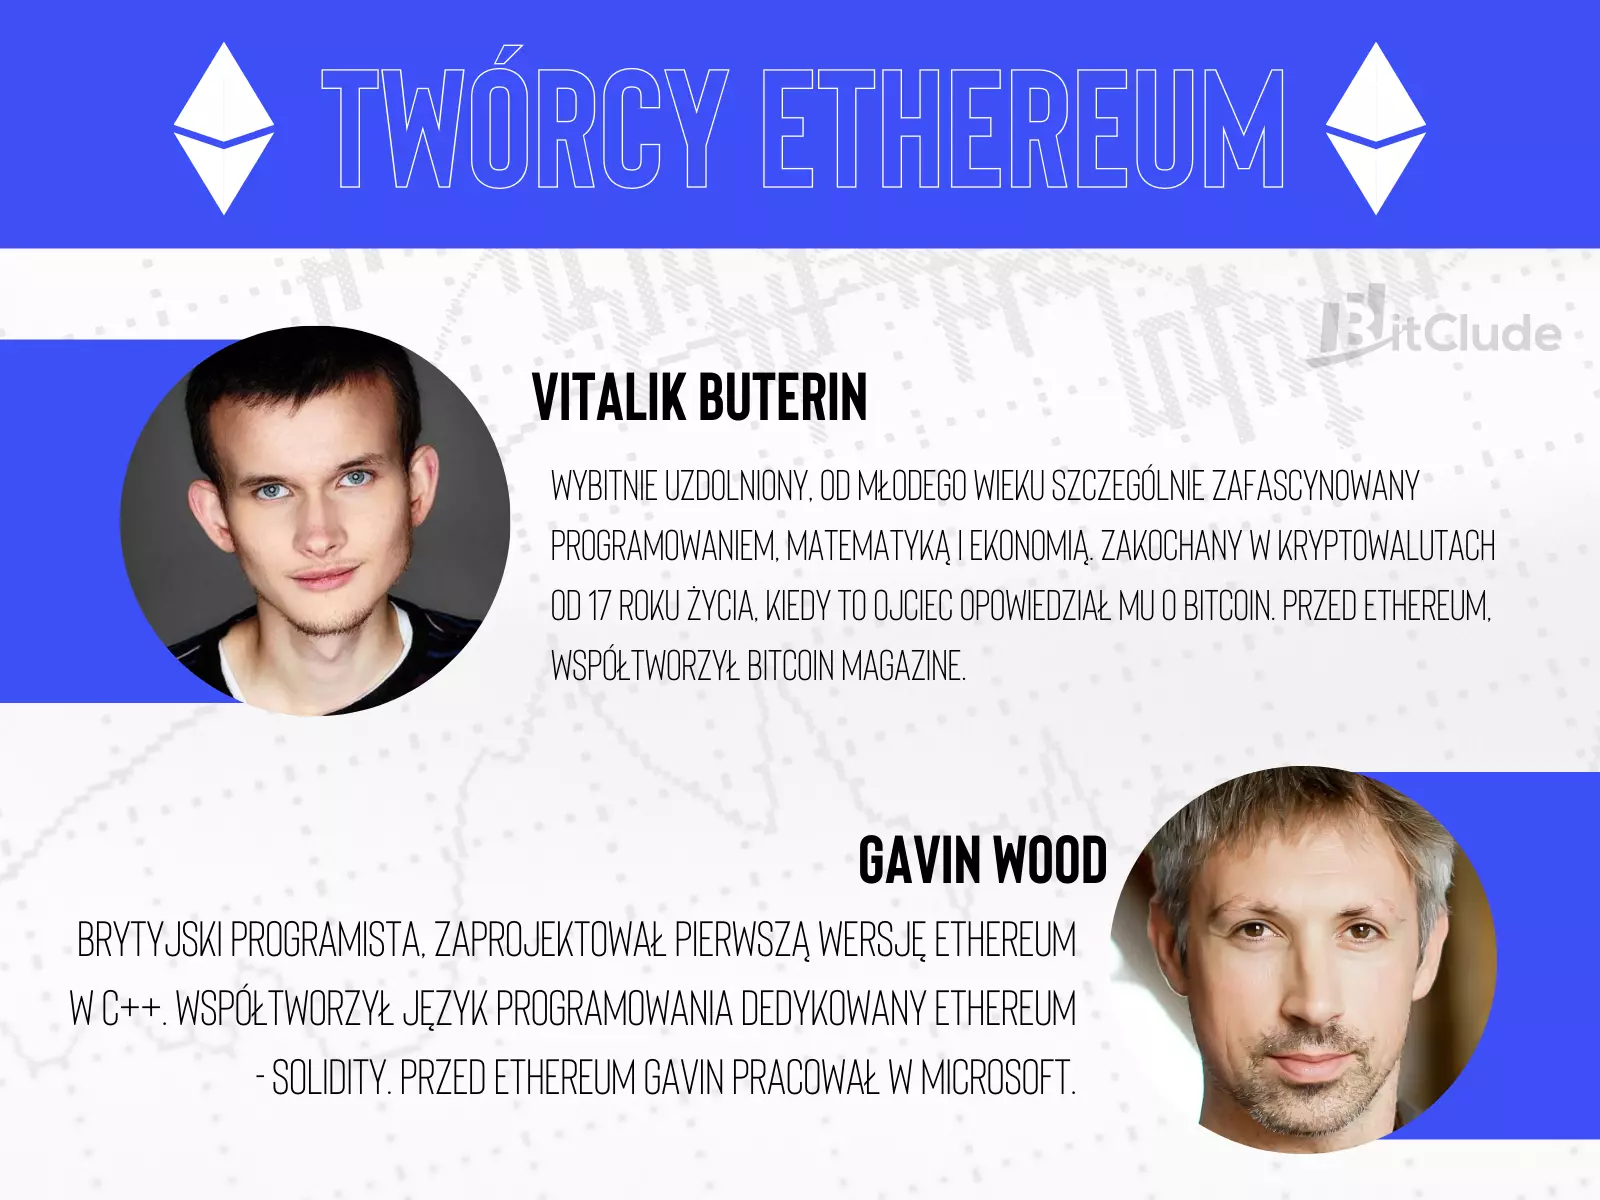 Twórcy Ethereum - Vitalik Buterin i Gavin Wood